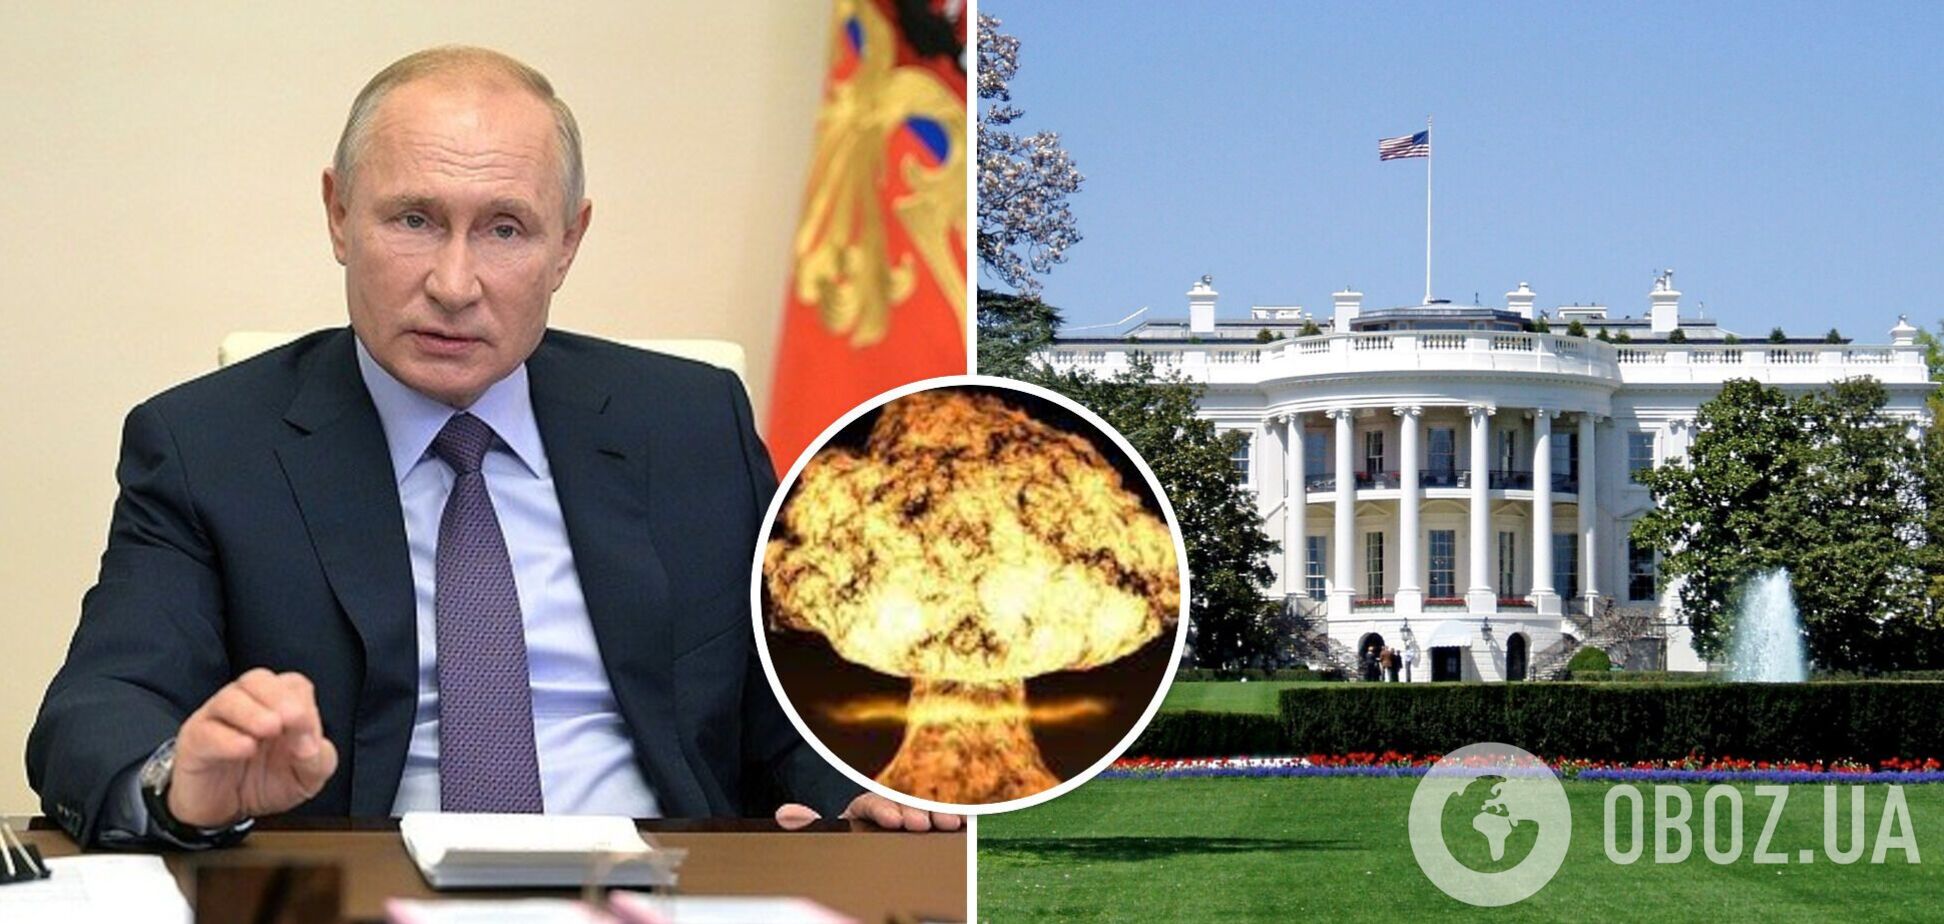 'Ставки очень высоки': в Белом доме отреагировали на ядерные угрозы РФ и призвали к переговорам